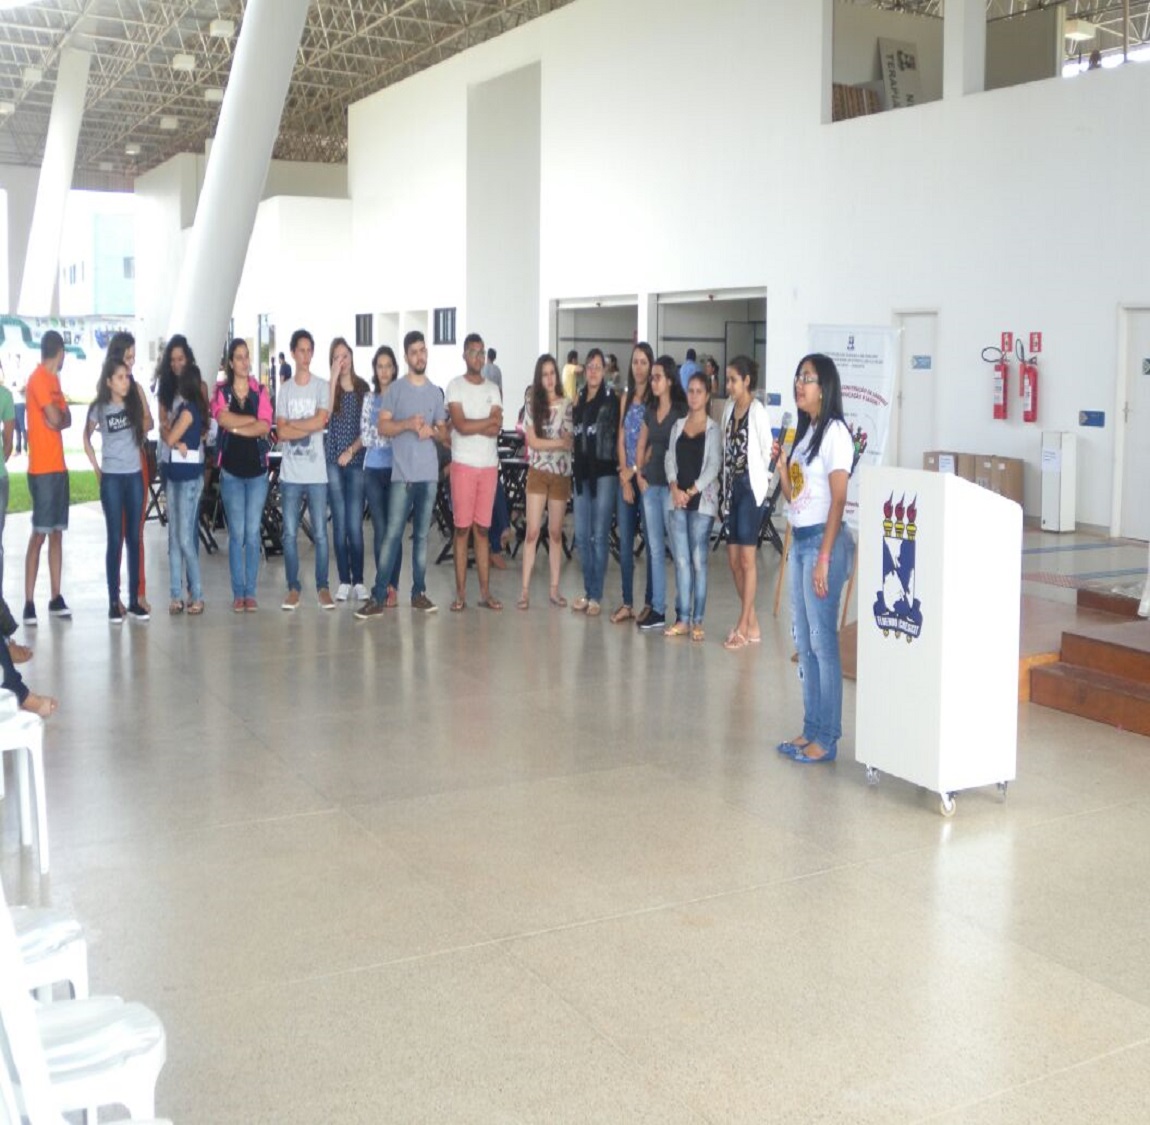 A pedagoga Lorena Lima apresenta os estudantes que participam do Projeto desde o início dos módulos (Foto: Ascom UFS Lagarto)